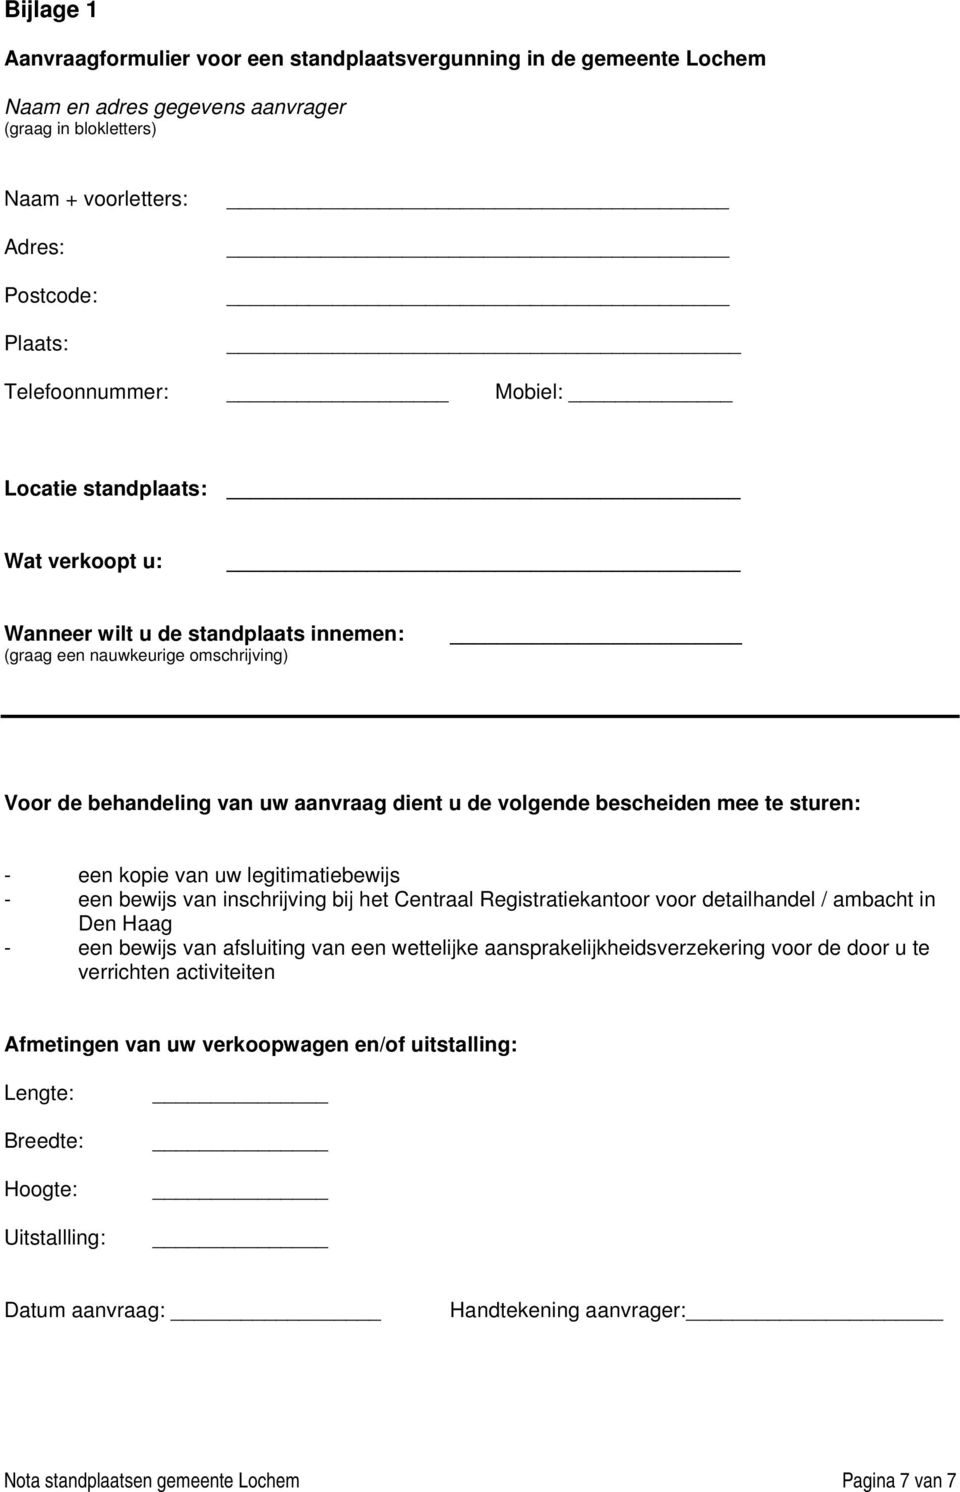 een kopie van uw legitimatiebewijs - een bewijs van inschrijving bij het Centraal Registratiekantoor voor detailhandel / ambacht in Den Haag - een bewijs van afsluiting van een wettelijke